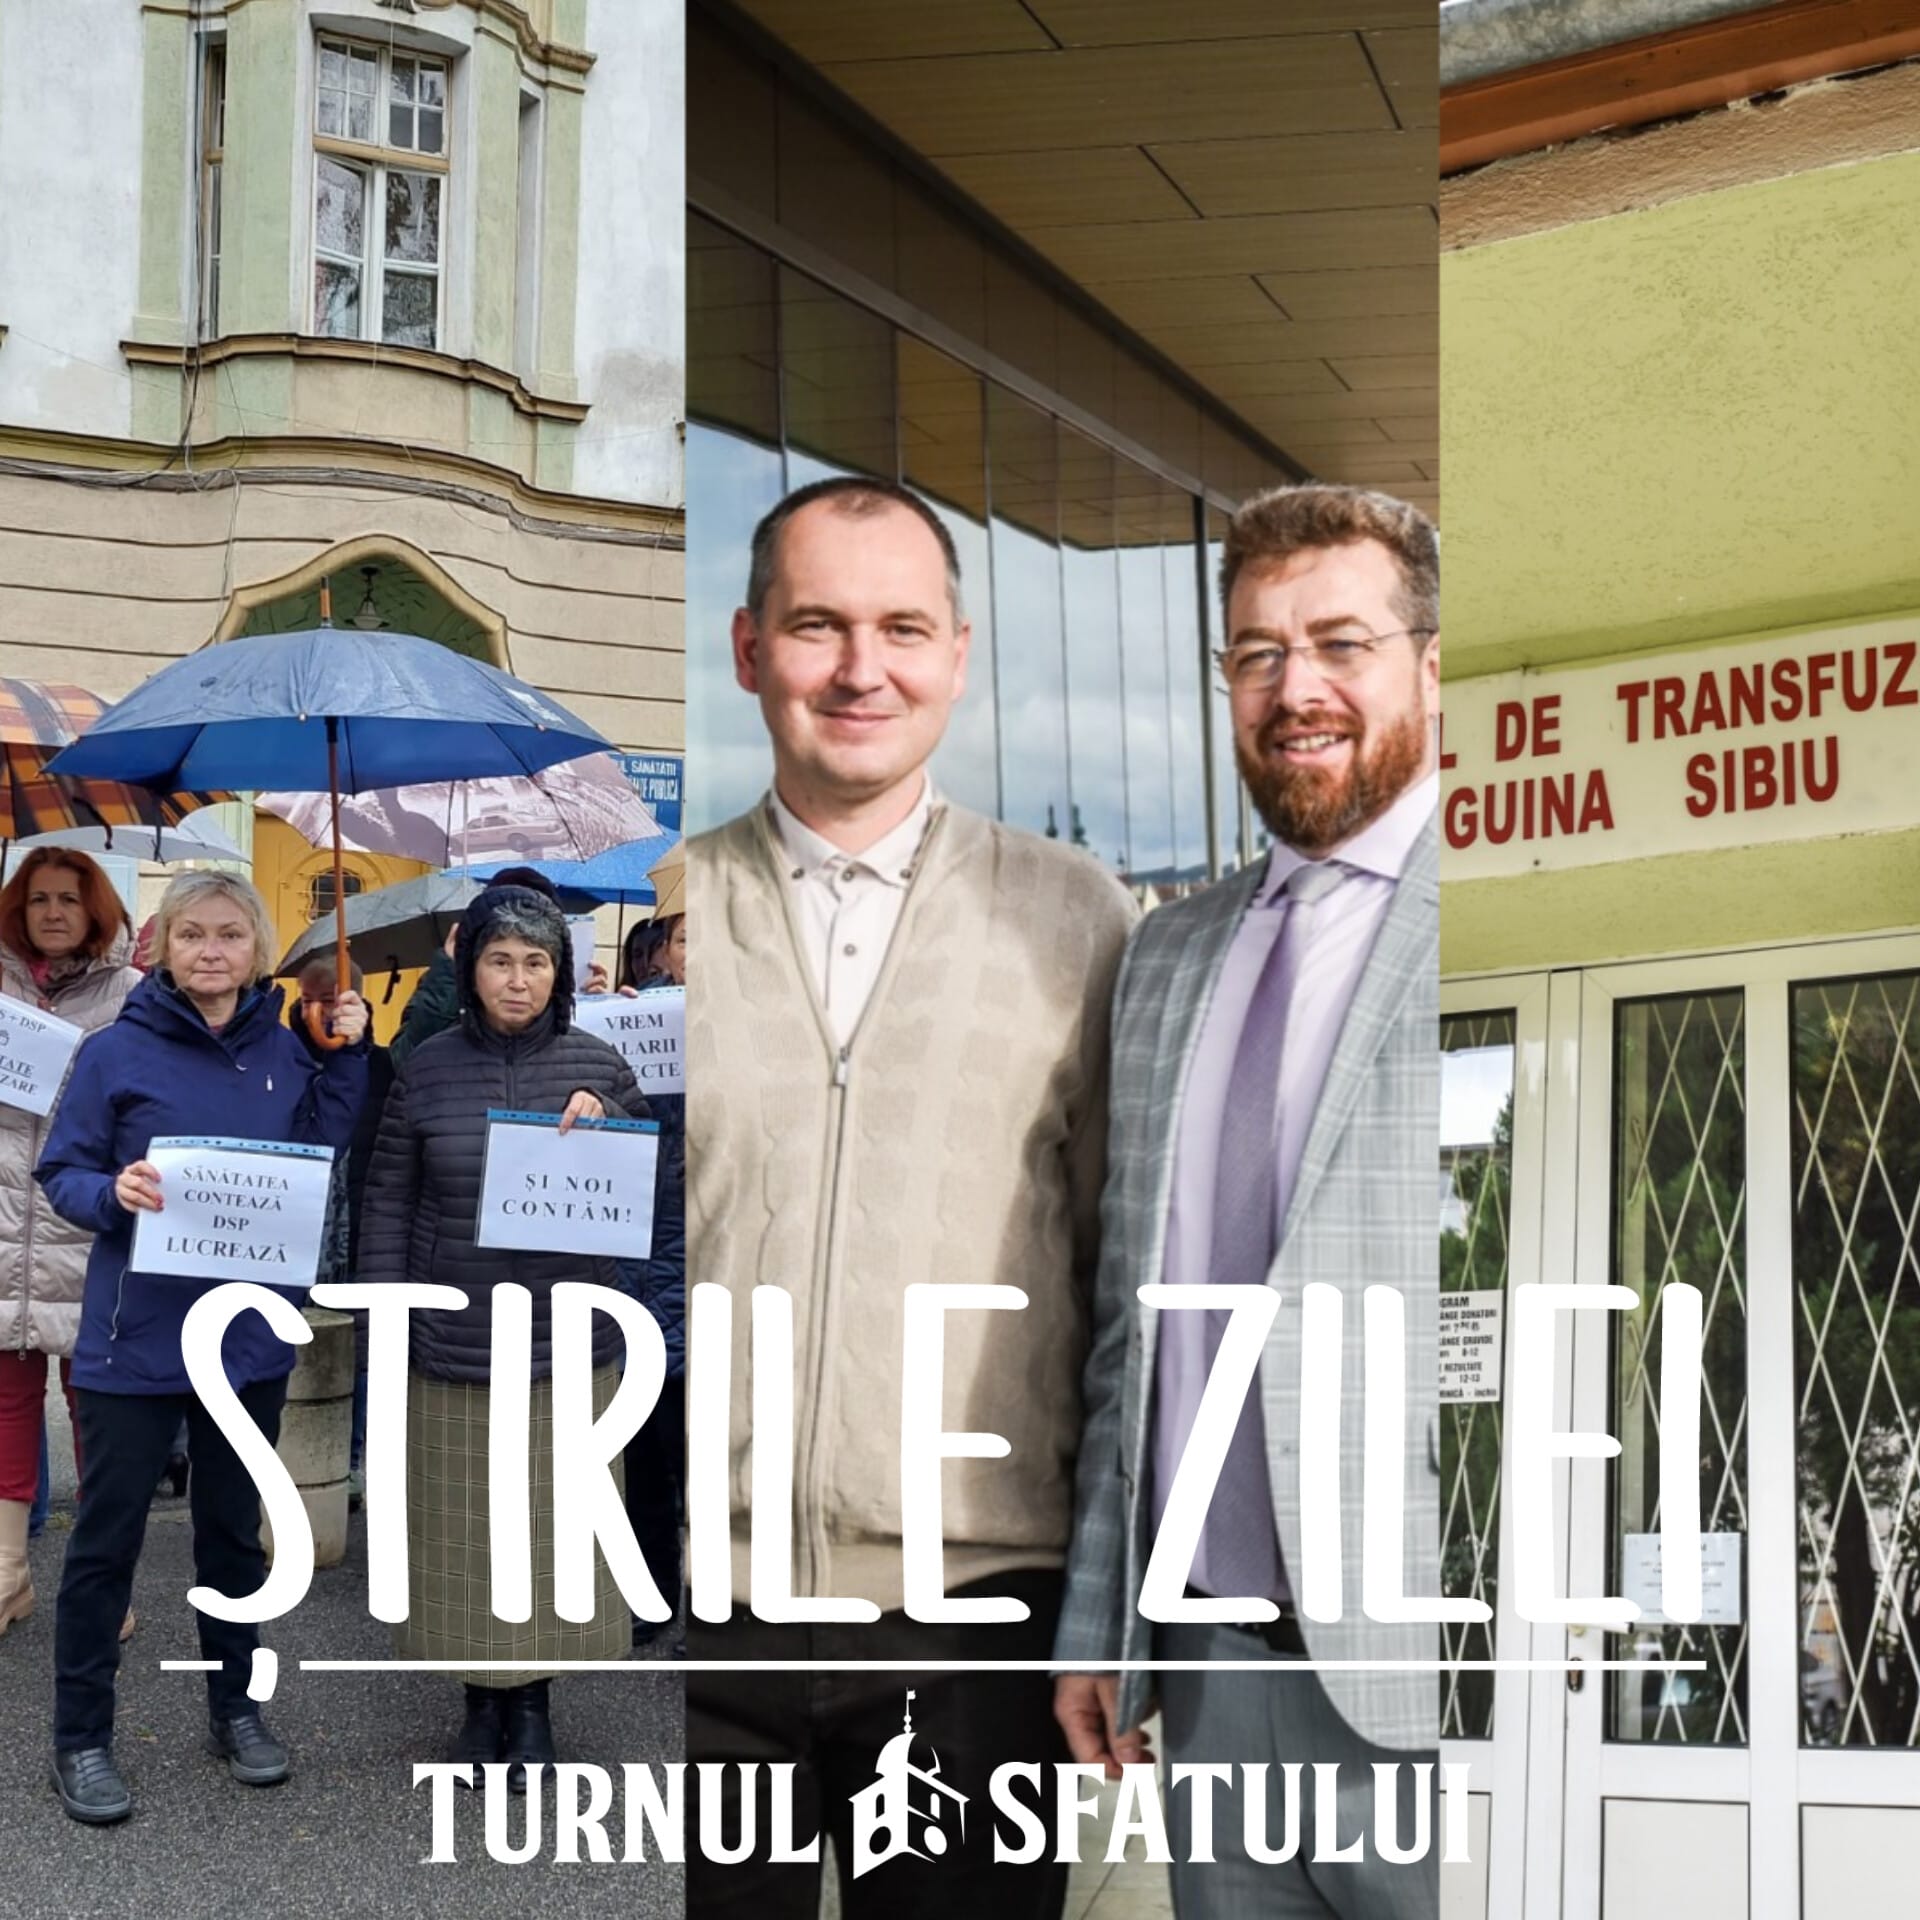 Știrile zilei, 15 noiembrie: De la un garaj la un sediu de 10 milioane de euro, Sibiul are nevoie de sânge și DSP-ul a intrat în grevă